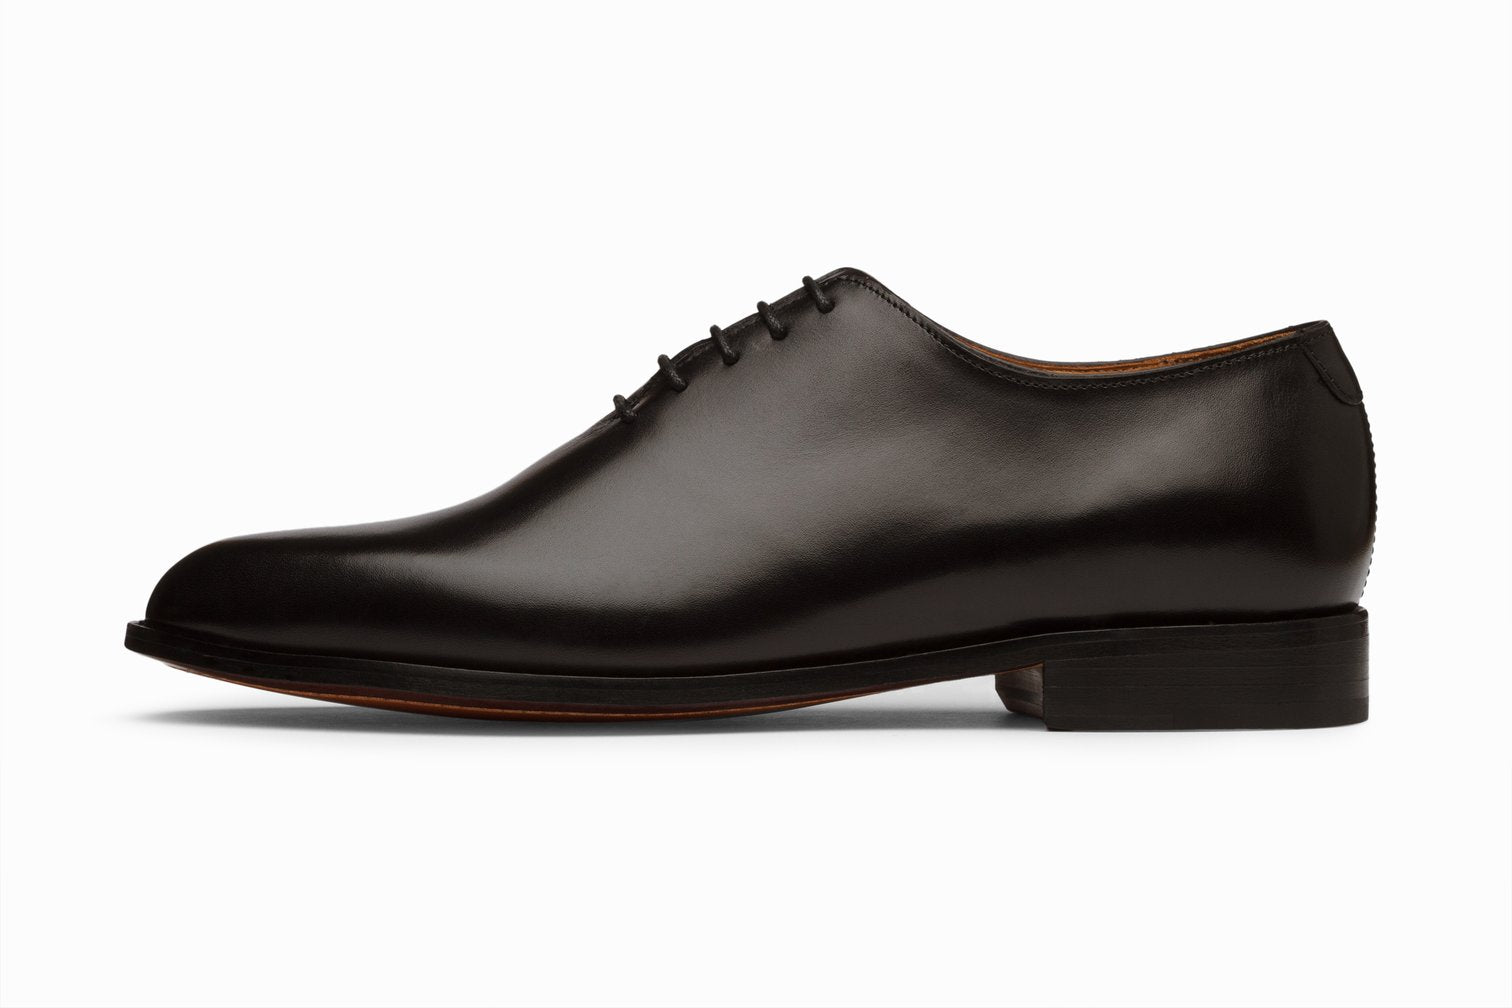 Plain whole cut black oxford shoes, formal black shoes for men in Dubai.